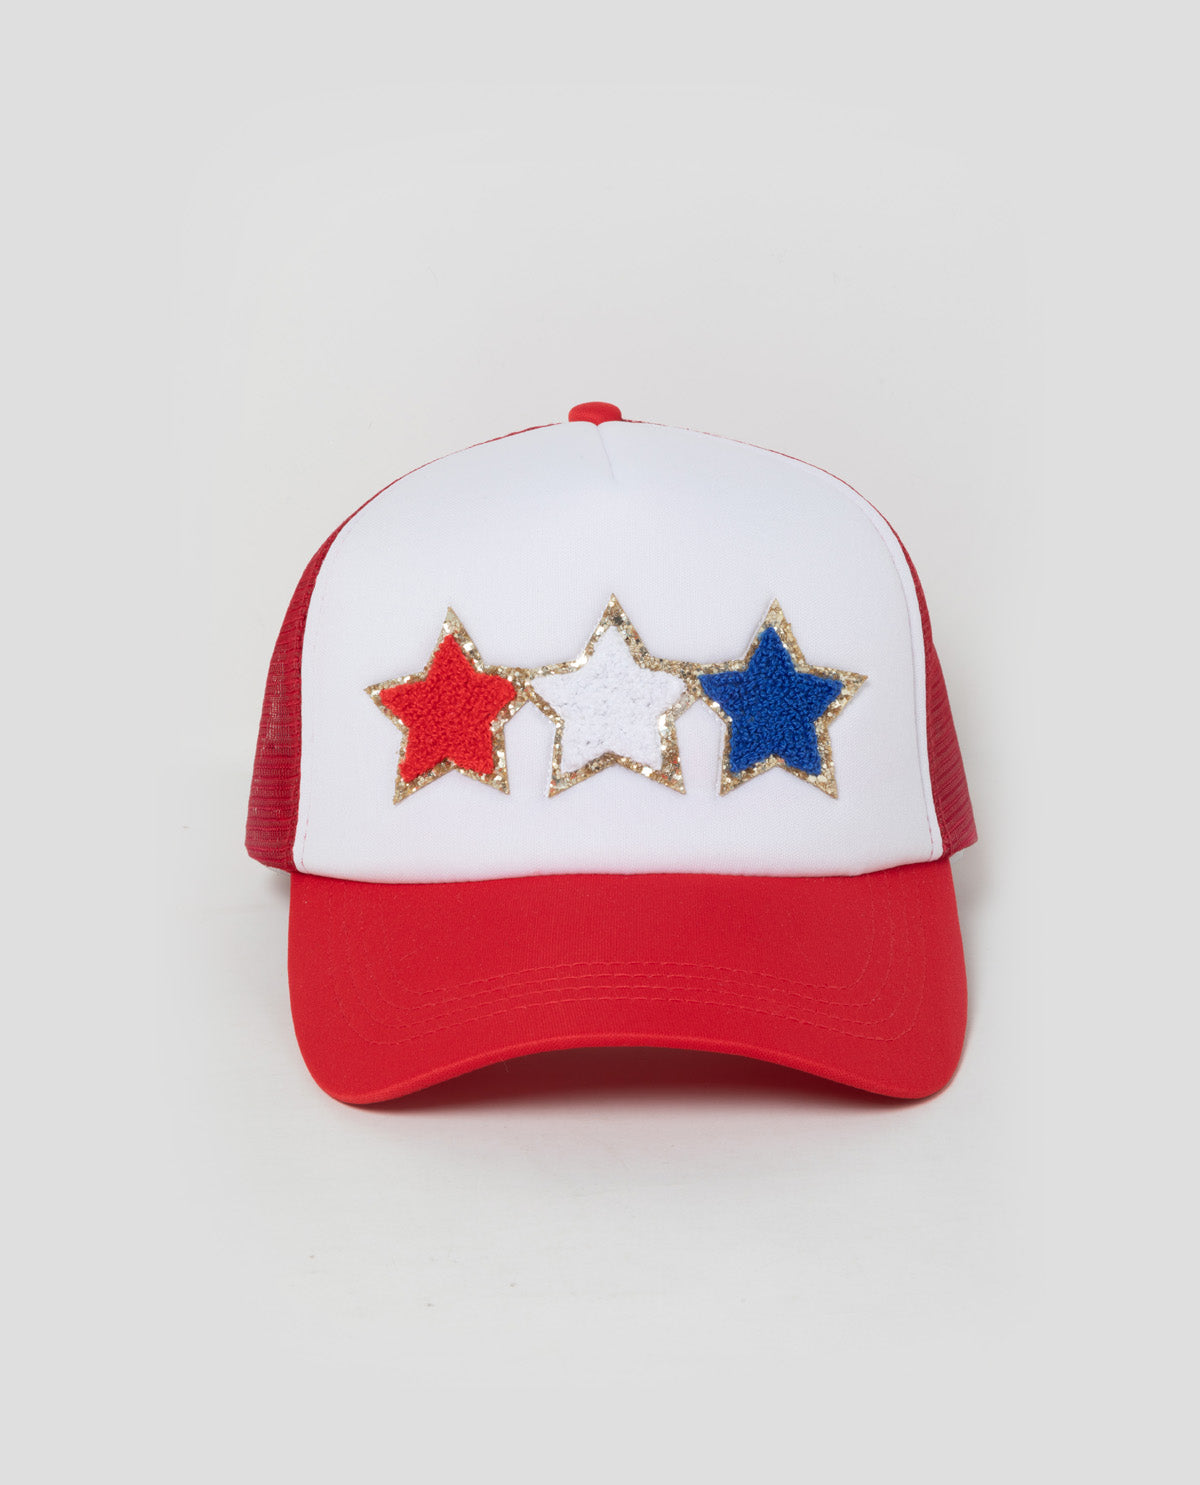 Red, White, & Blue Star Baseball Cap